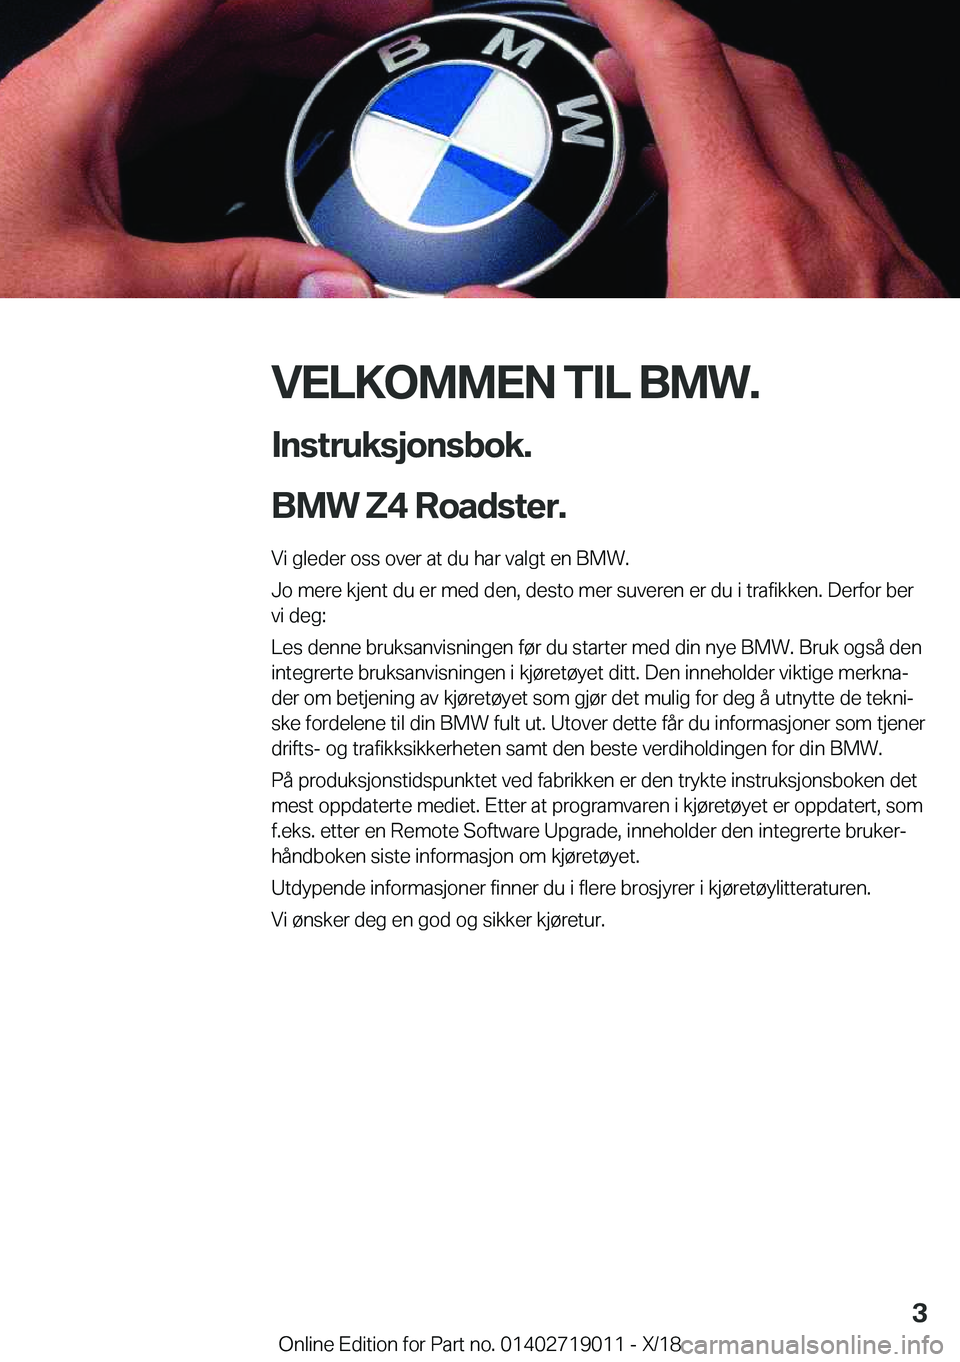 BMW Z4 2019  InstruksjonsbØker (in Norwegian) �V�E�L�K�O�M�M�E�N��T�I�L��B�M�W�.�I�n�s�t�r�u�k�s�j�o�n�s�b�o�k�.
�B�M�W��Z�4��R�o�a�d�s�t�e�r�.
�V�i��g�l�e�d�e�r��o�s�s��o�v�e�r��a�t��d�u��h�a�r��v�a�l�g�t��e�n��B�M�W�.
�J�o��m�e�r�